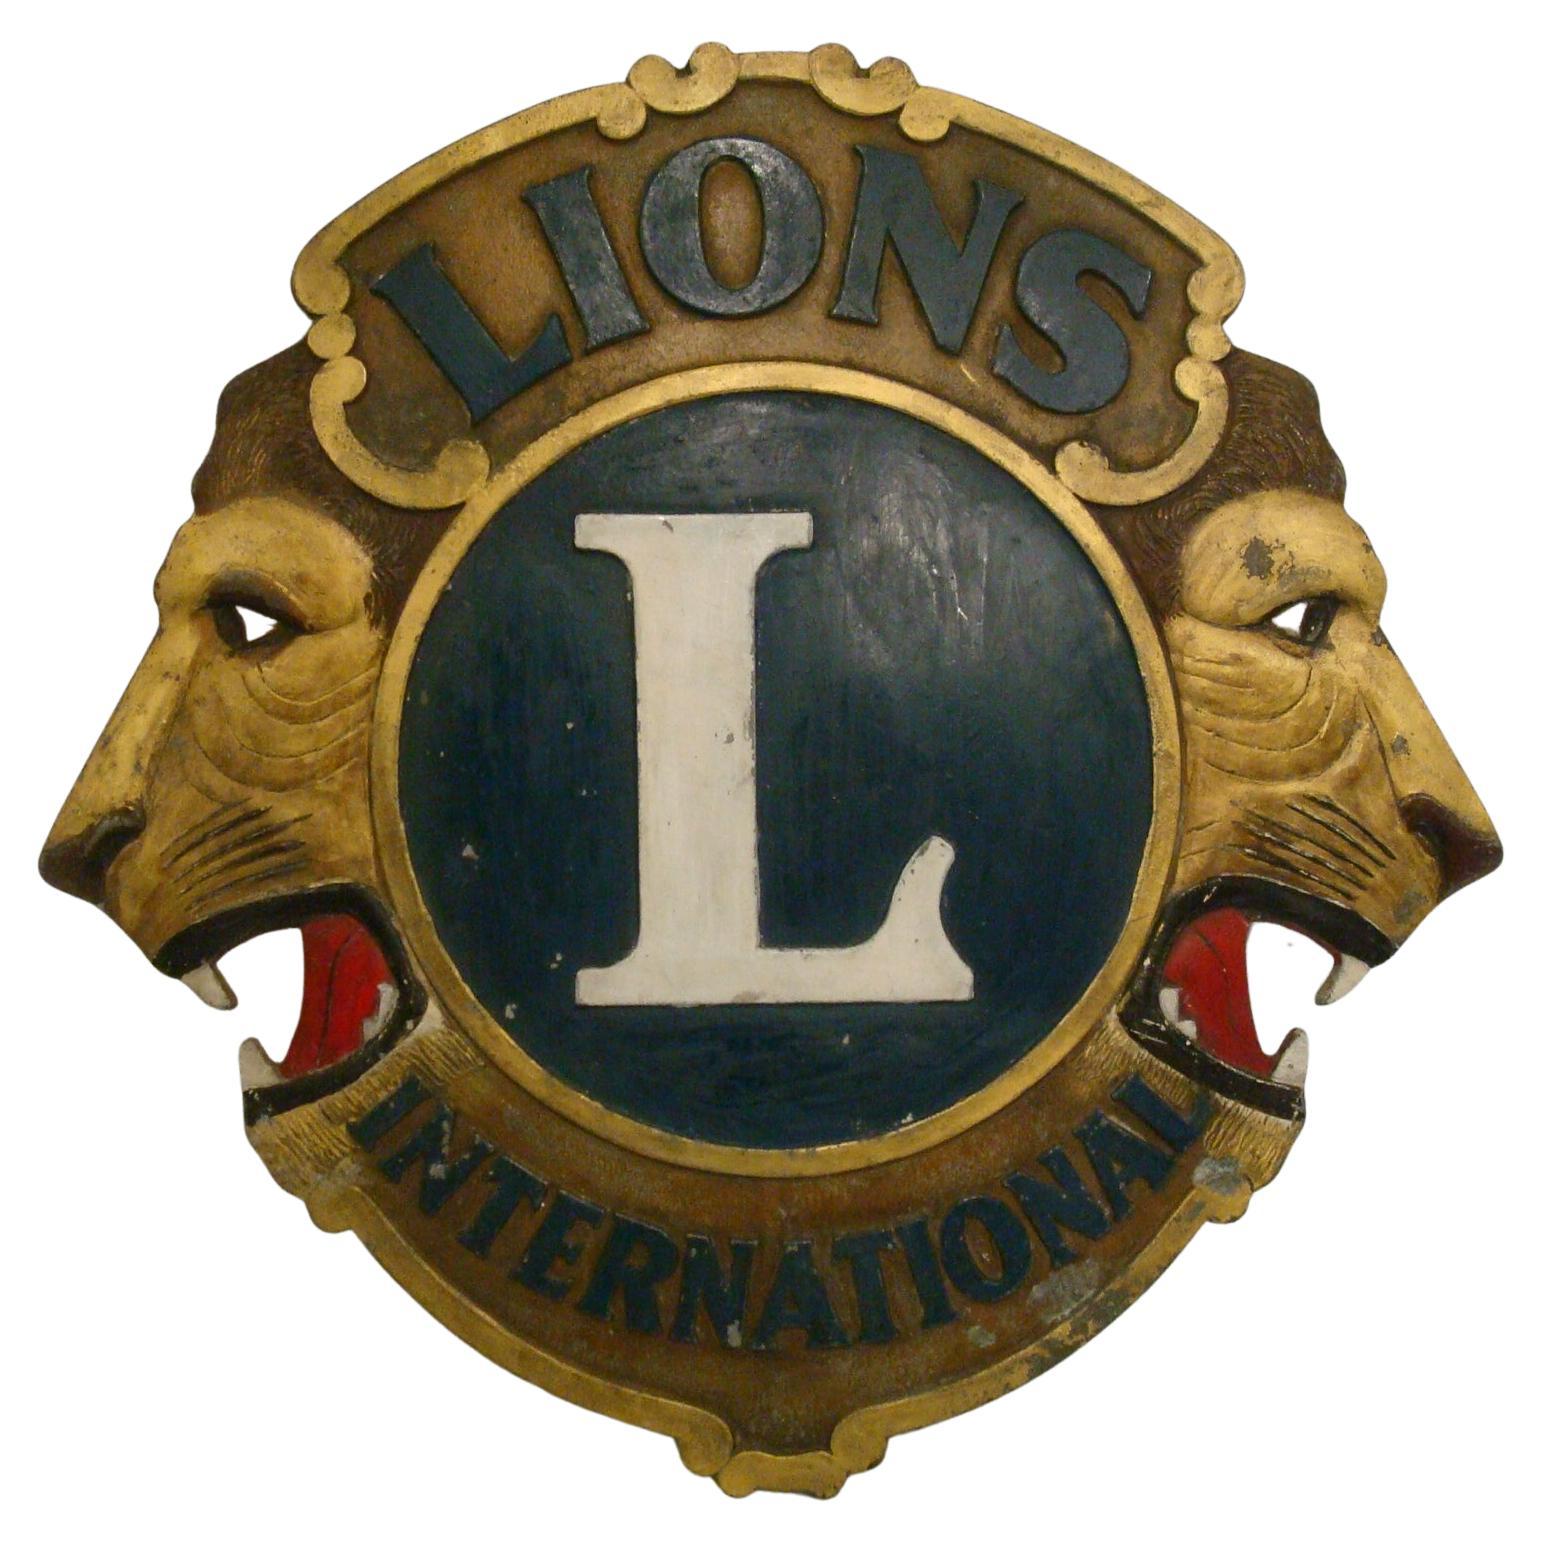 Vintage Lions Club International Metallplakette / Gemaltes Werbeschild, 1940er Jahre